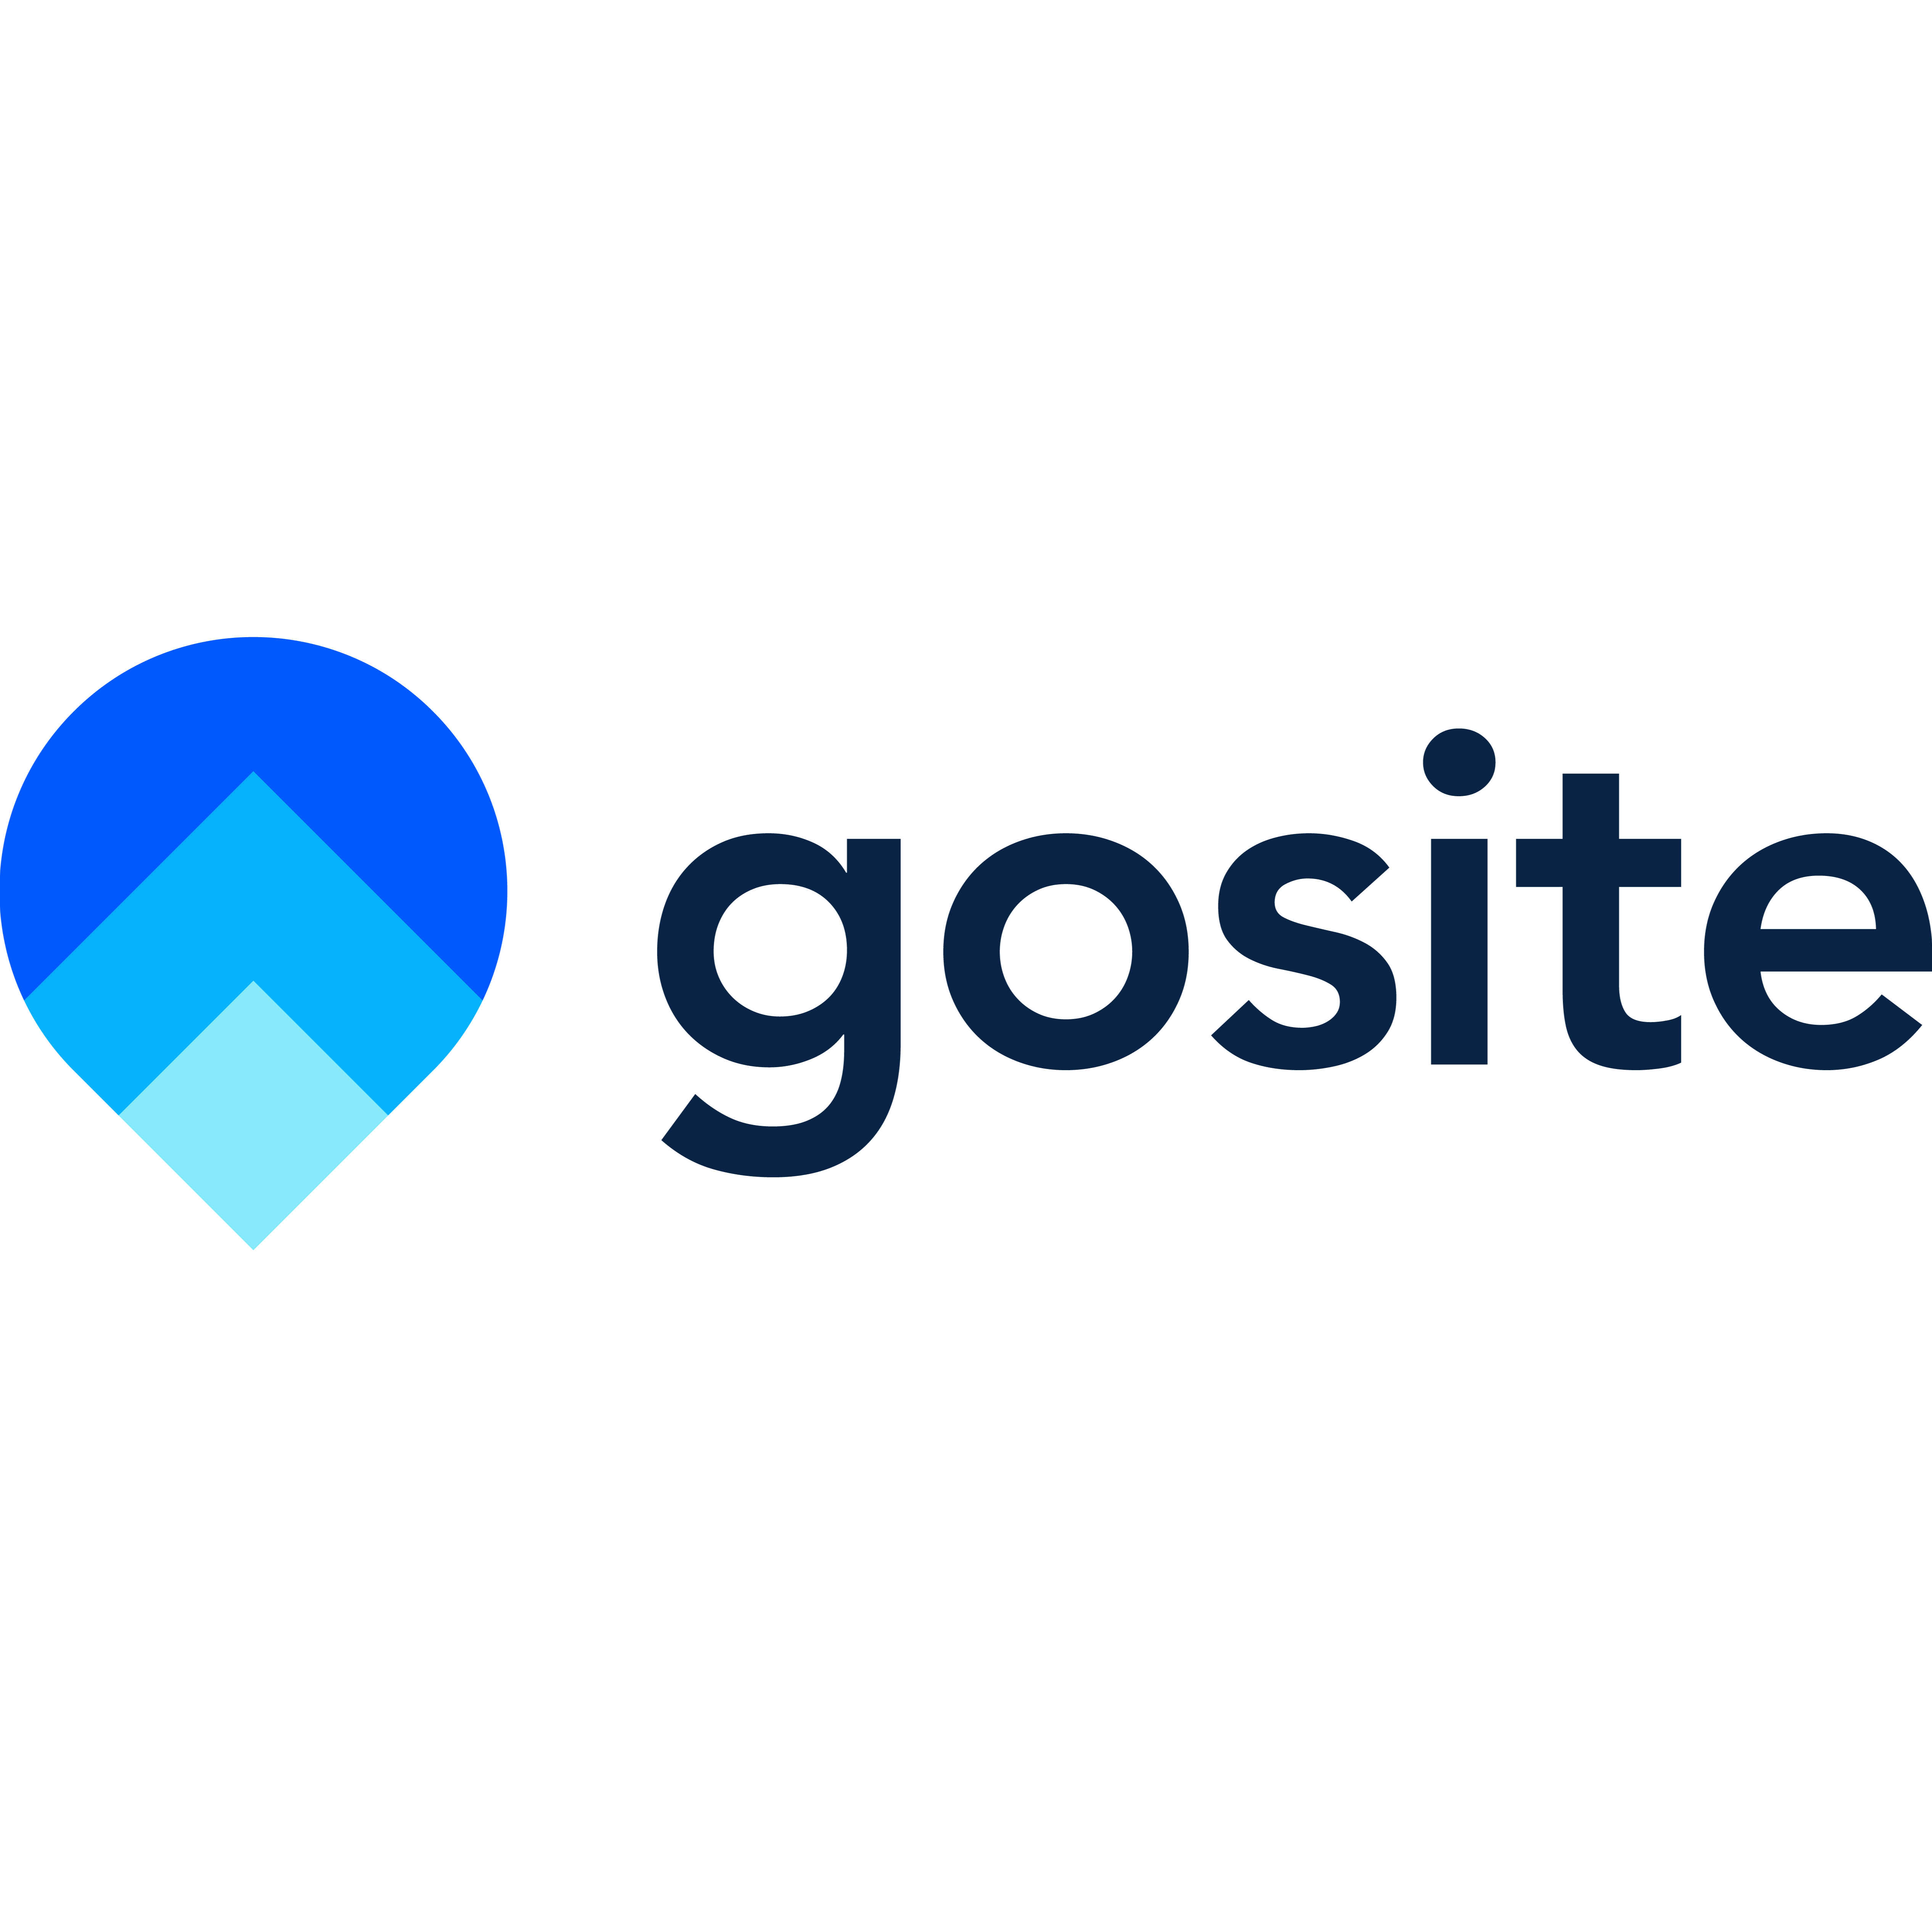 GoSite